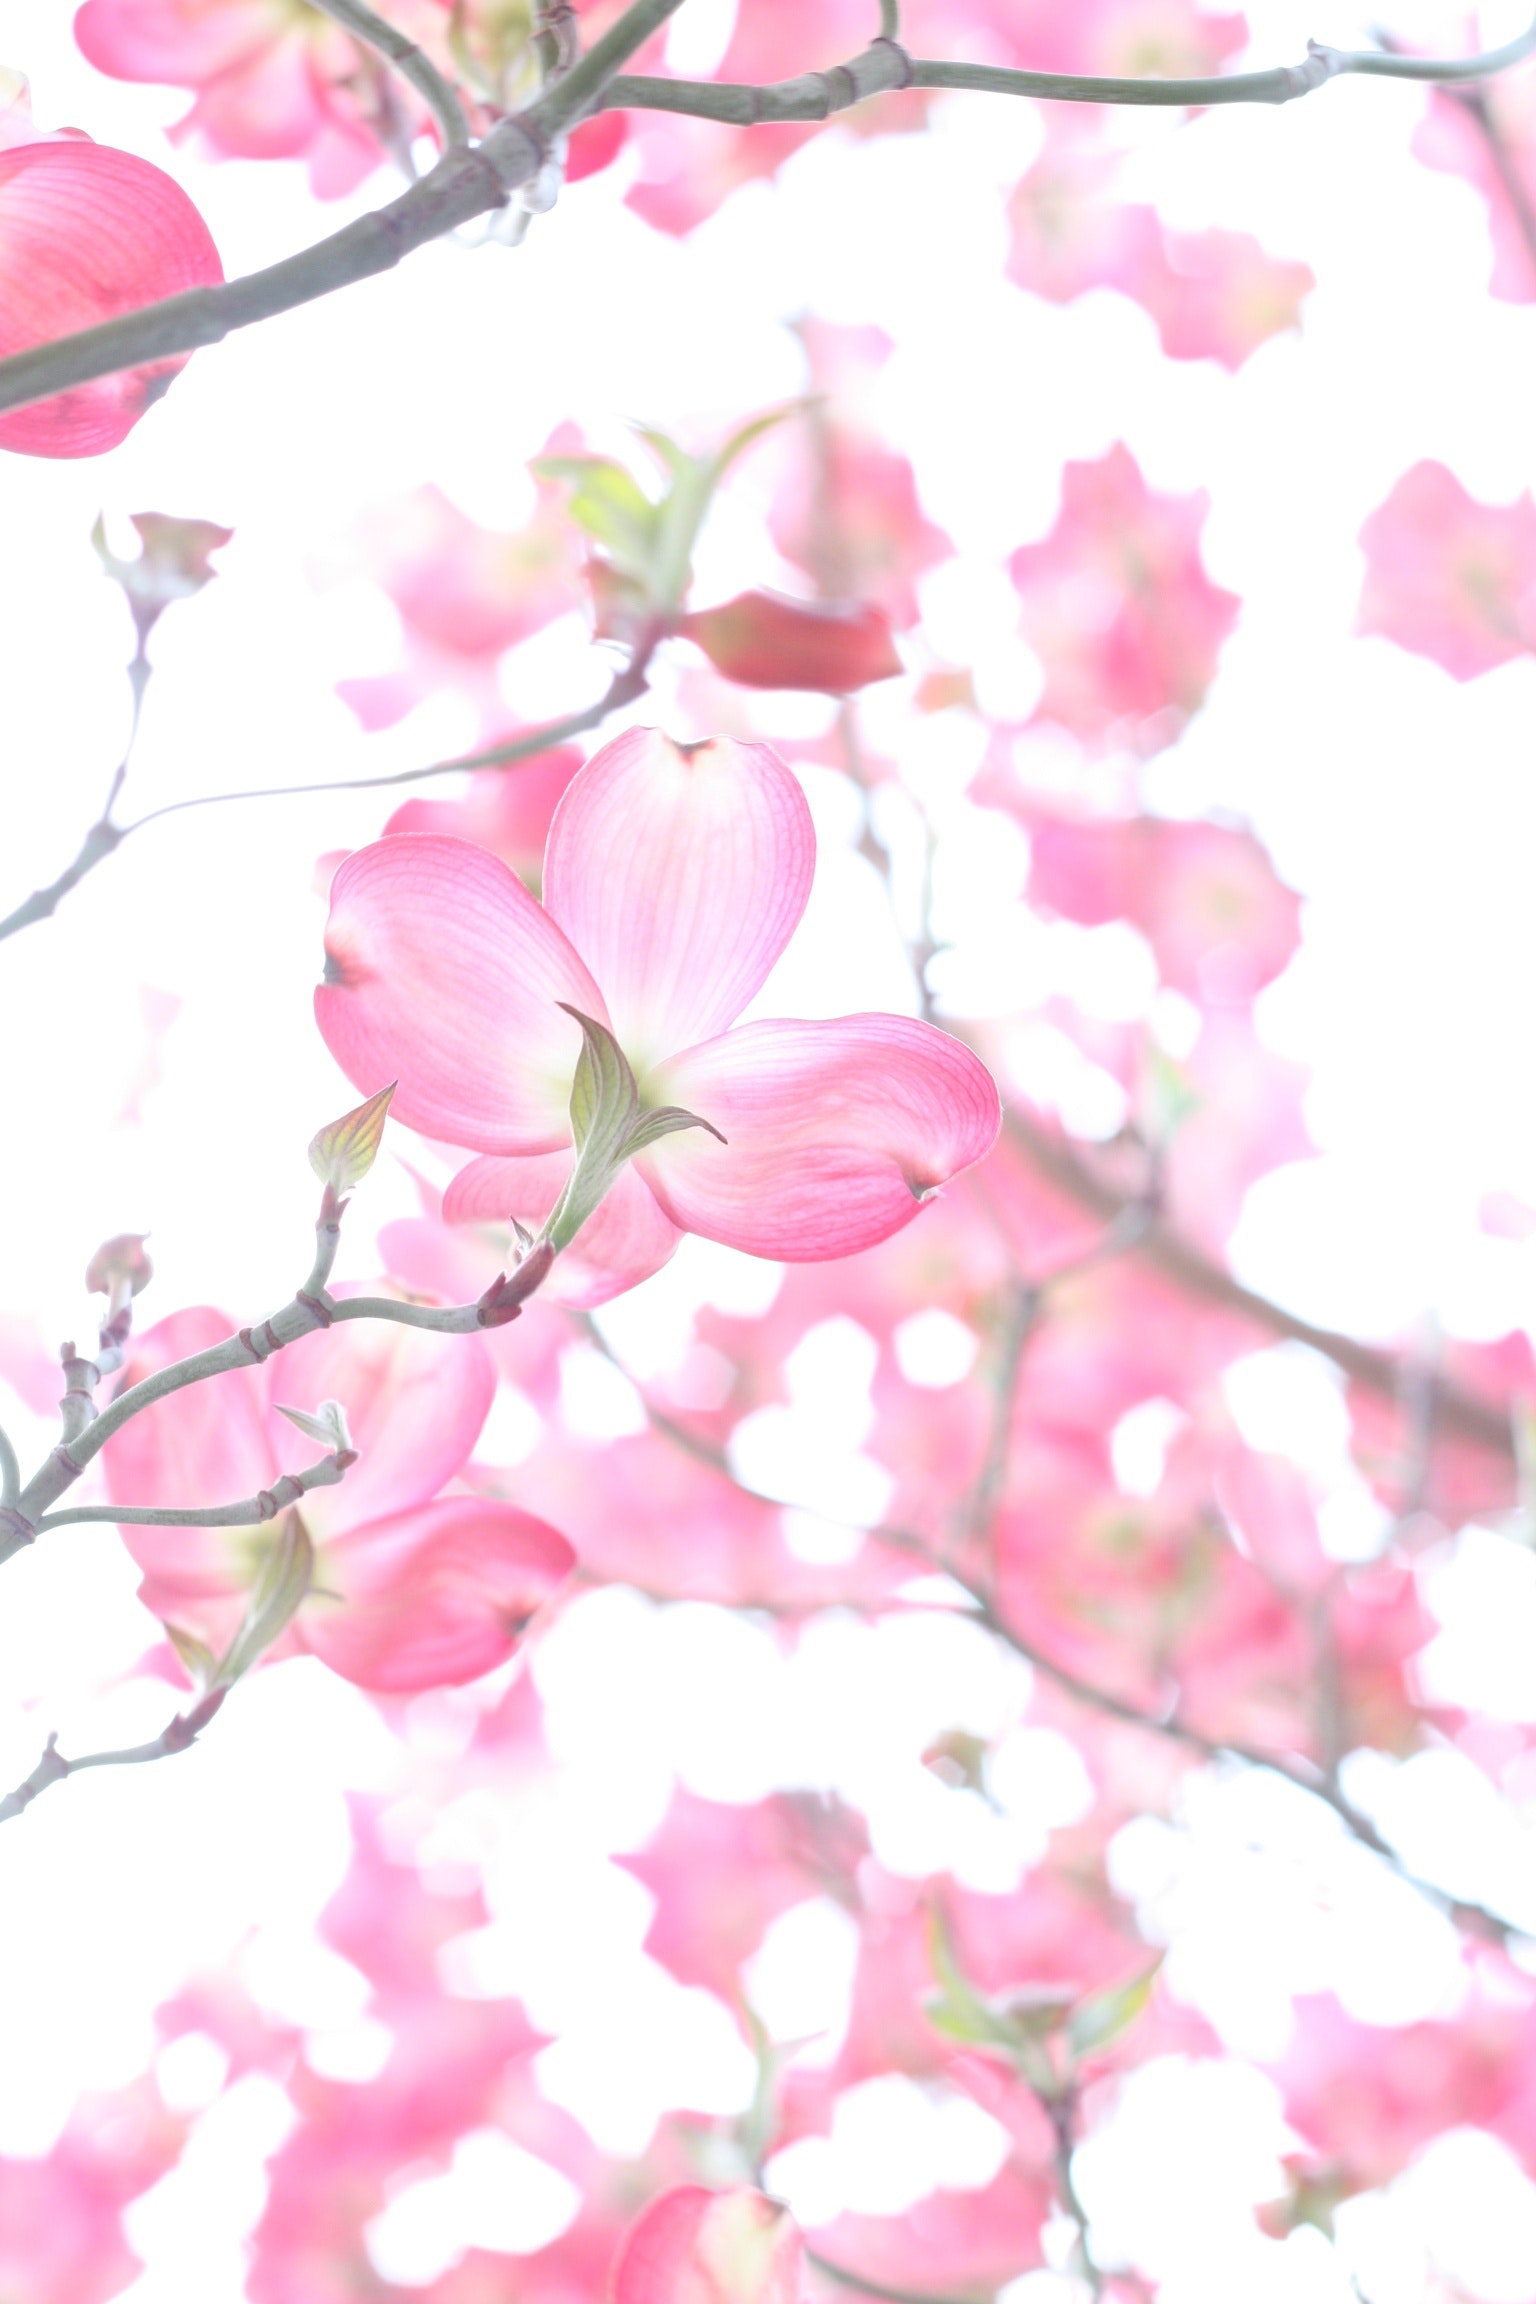 Best Spring Flower Photo · 100% Free Downloads